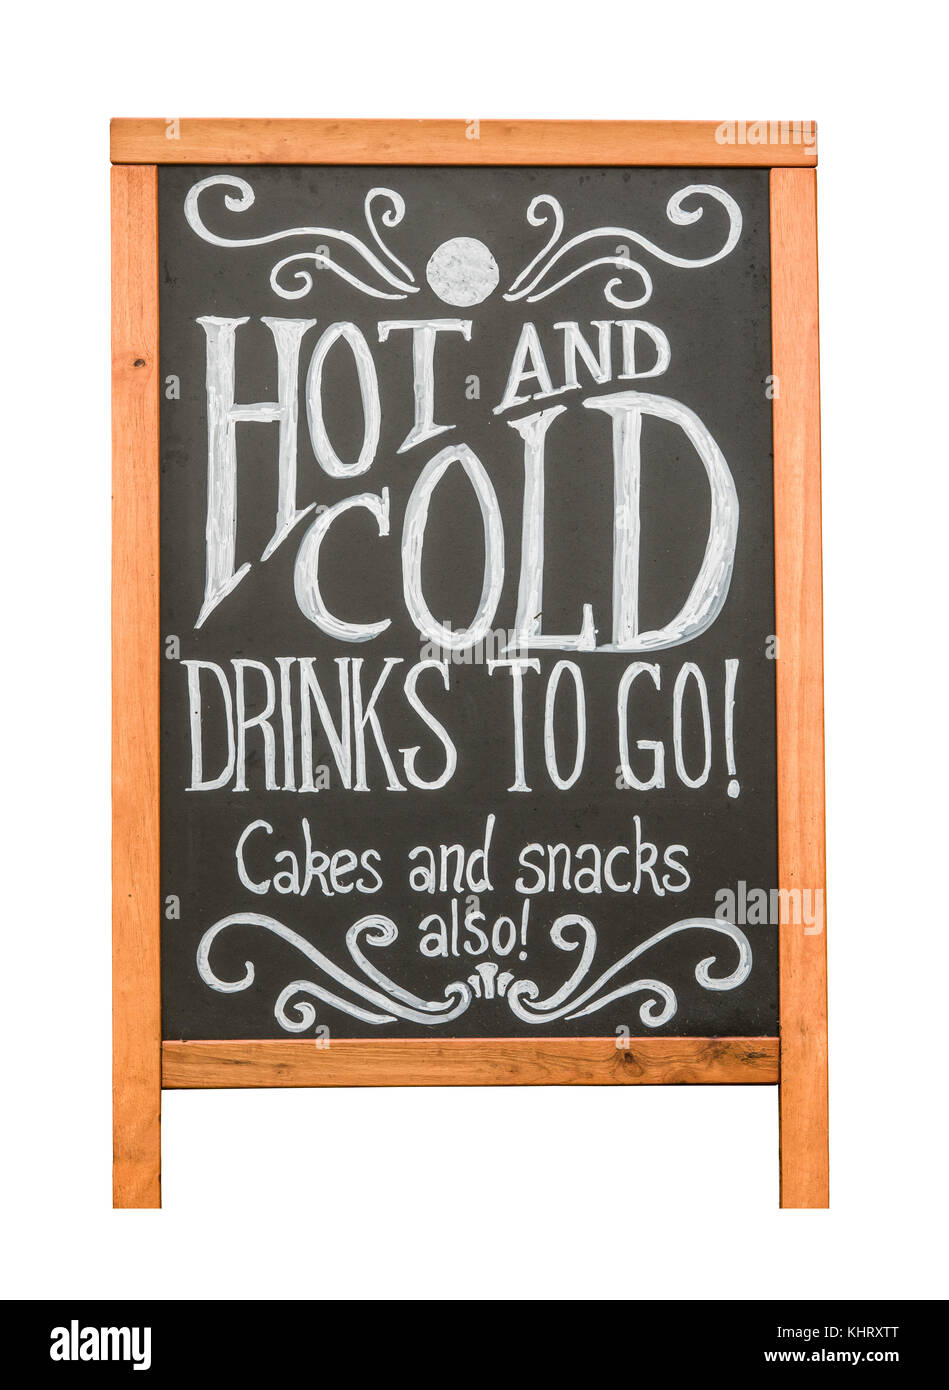 Café rústico aislado publicidad signo de bebidas frías y calientes, pasteles y aperitivos Foto de stock